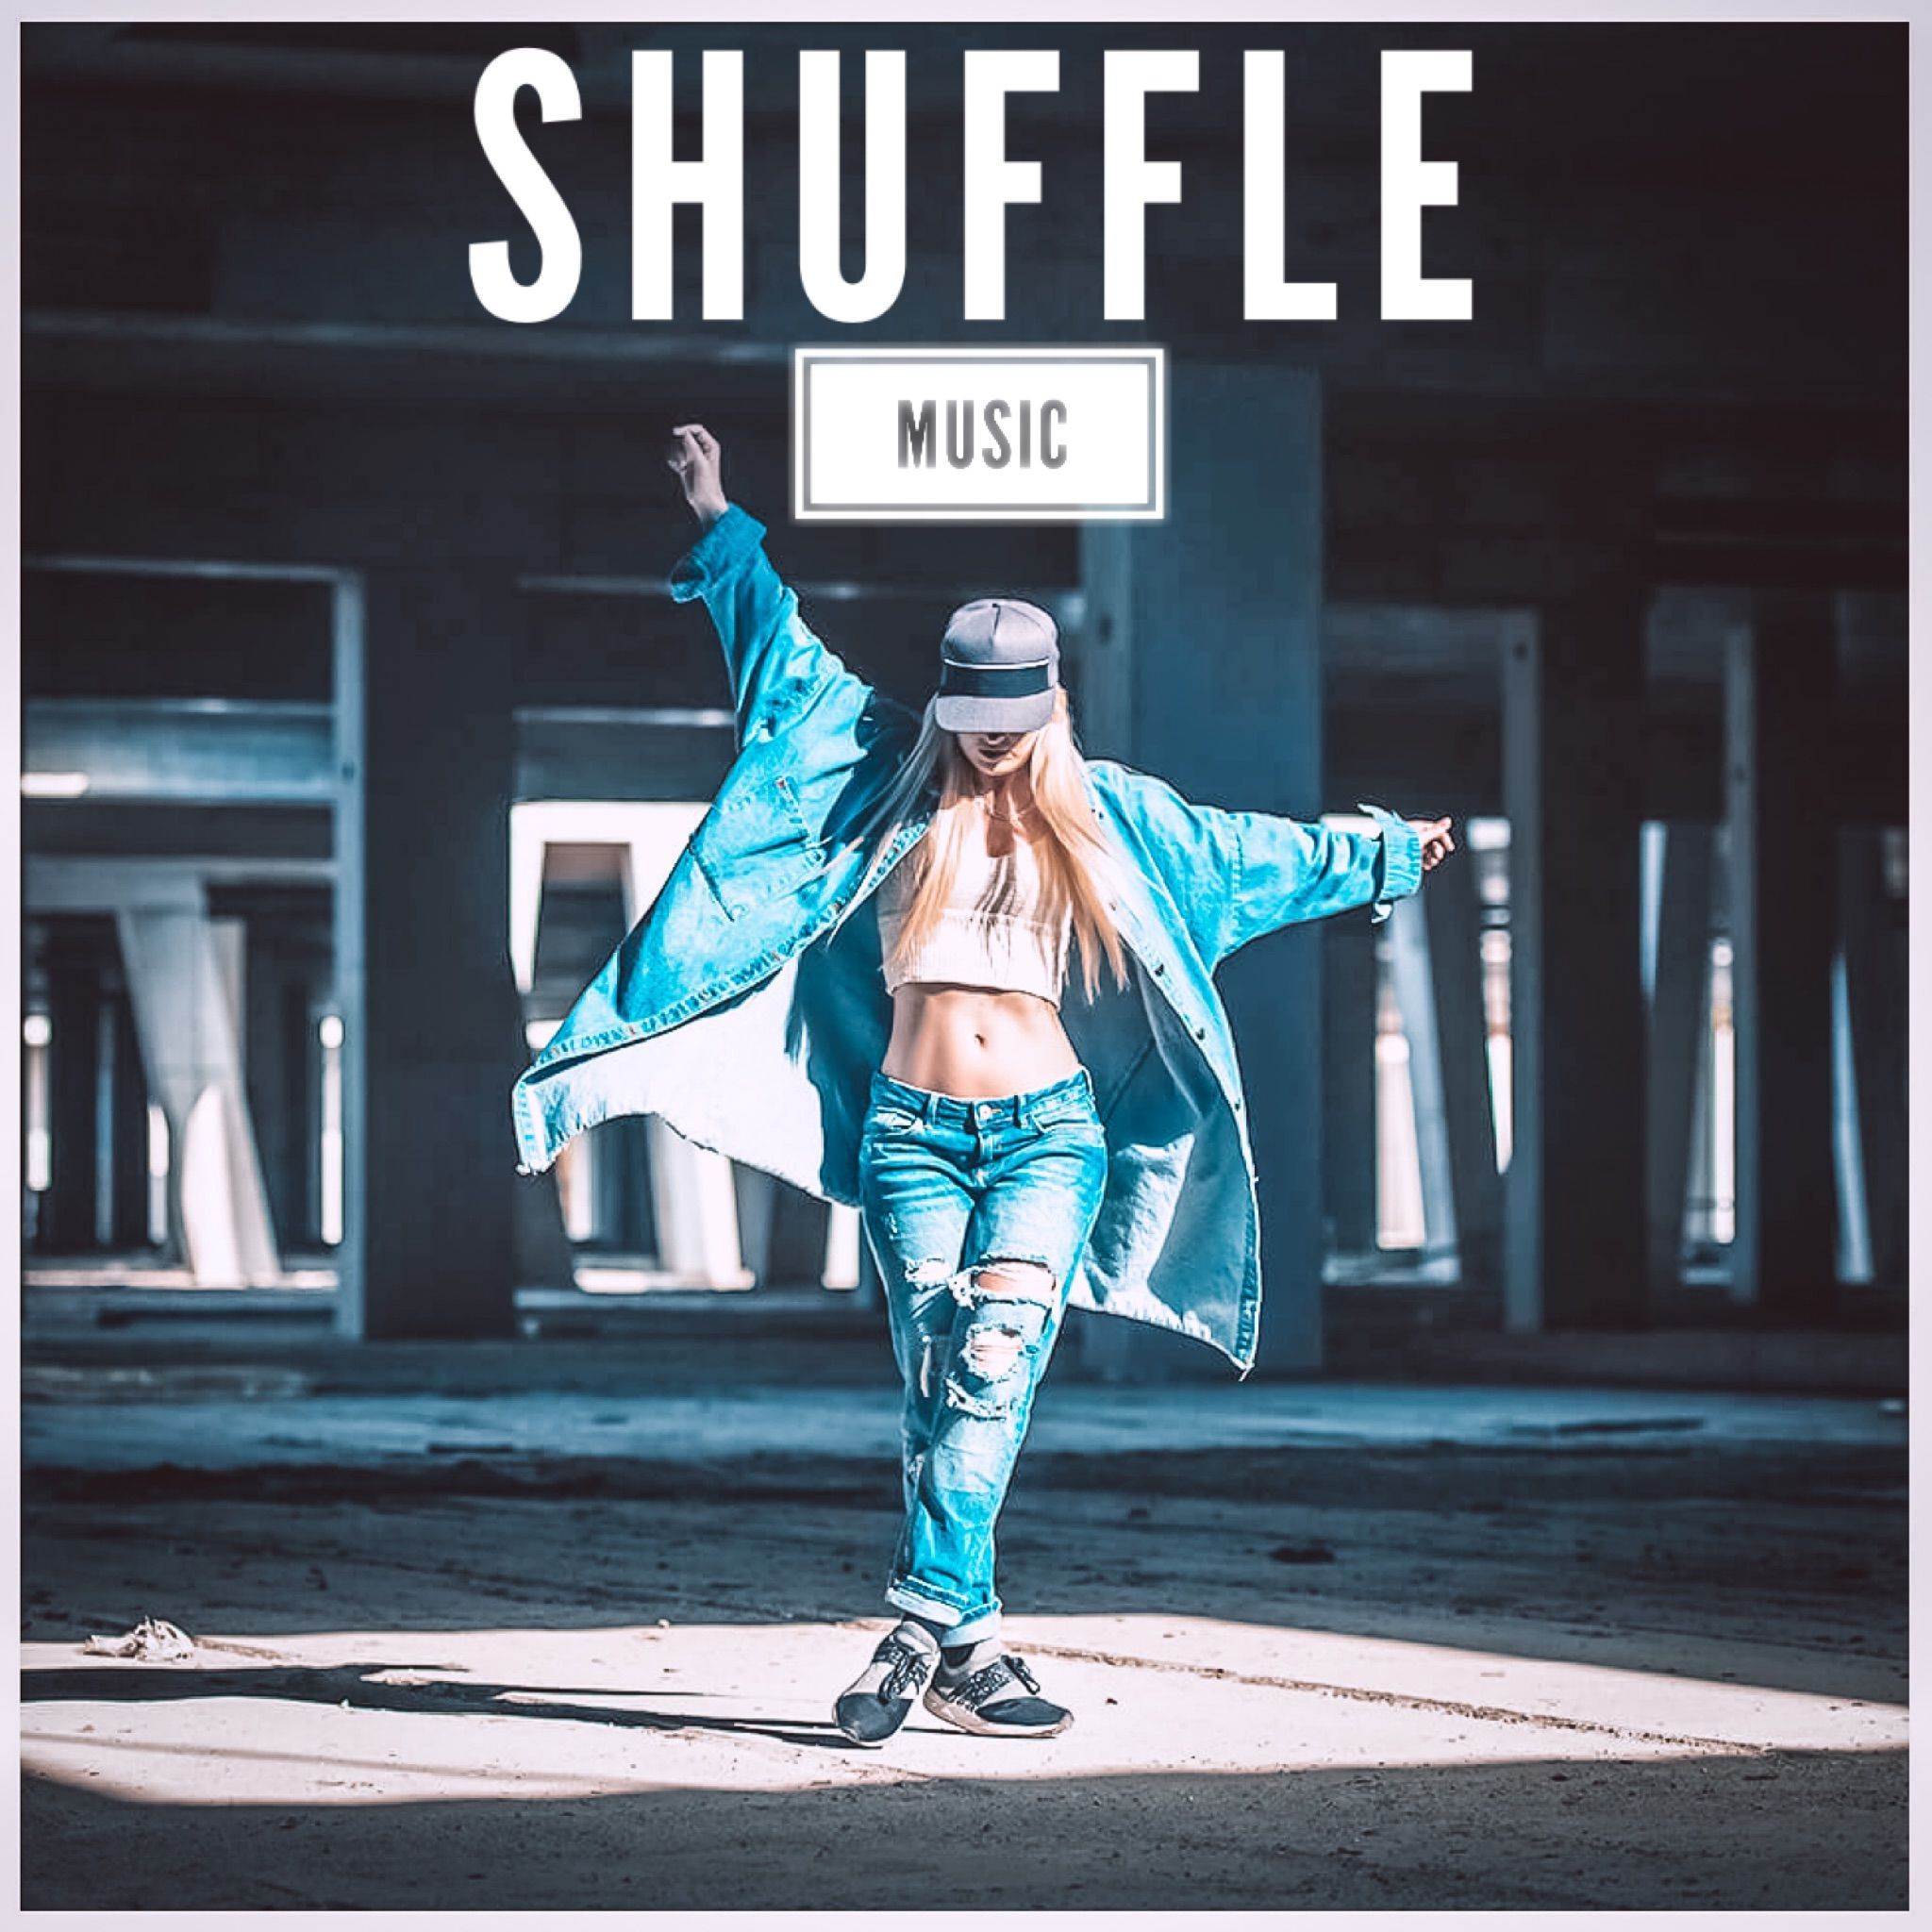 Shuffle Dance Music 2020 Cruz Shuffle Songs Hits Tracks Best Songs to Dance Shufflers. Blues dance, How to dance, Best songs